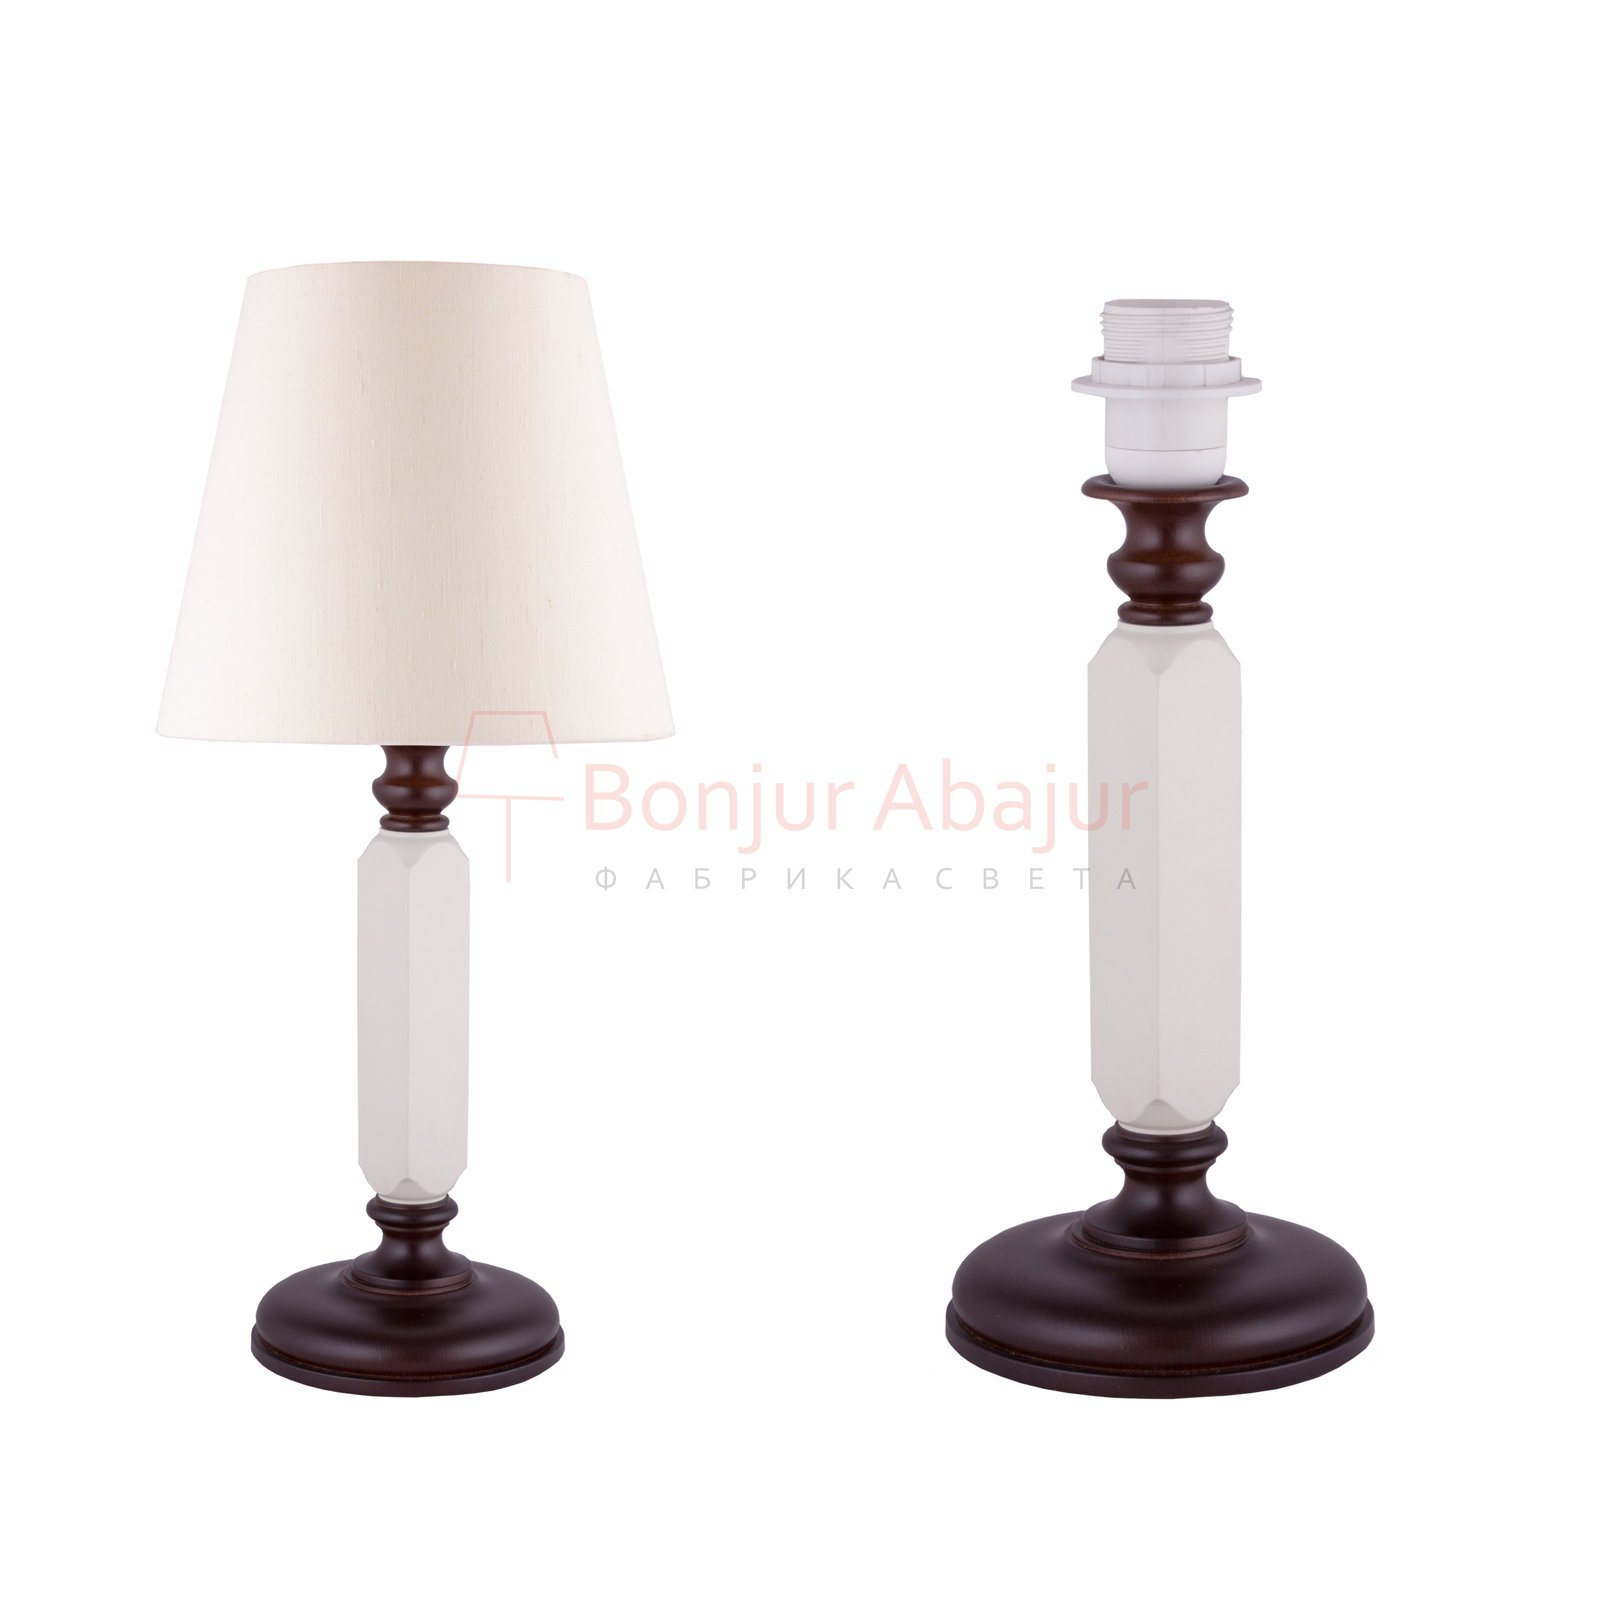 настольная лампа Bonjur Abajur LOFT HOUSE T-10